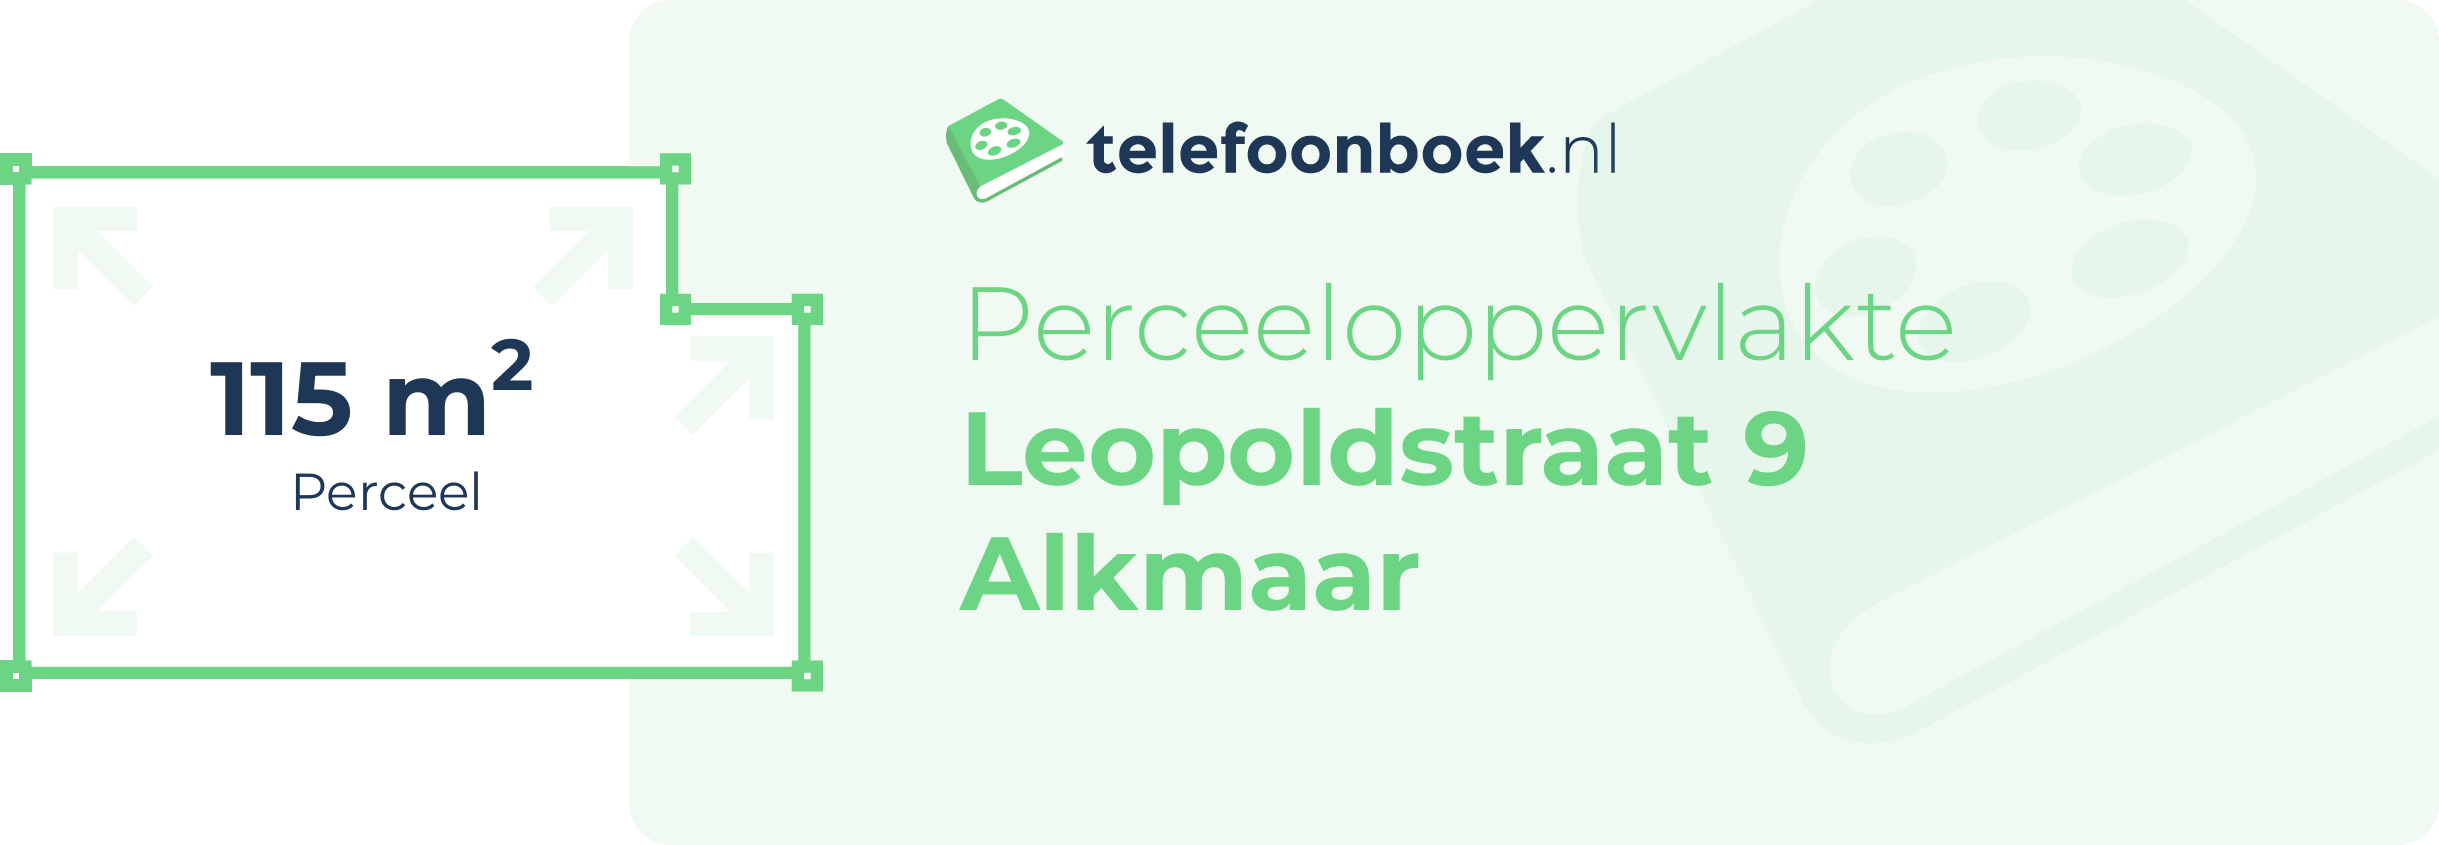 Perceeloppervlakte Leopoldstraat 9 Alkmaar